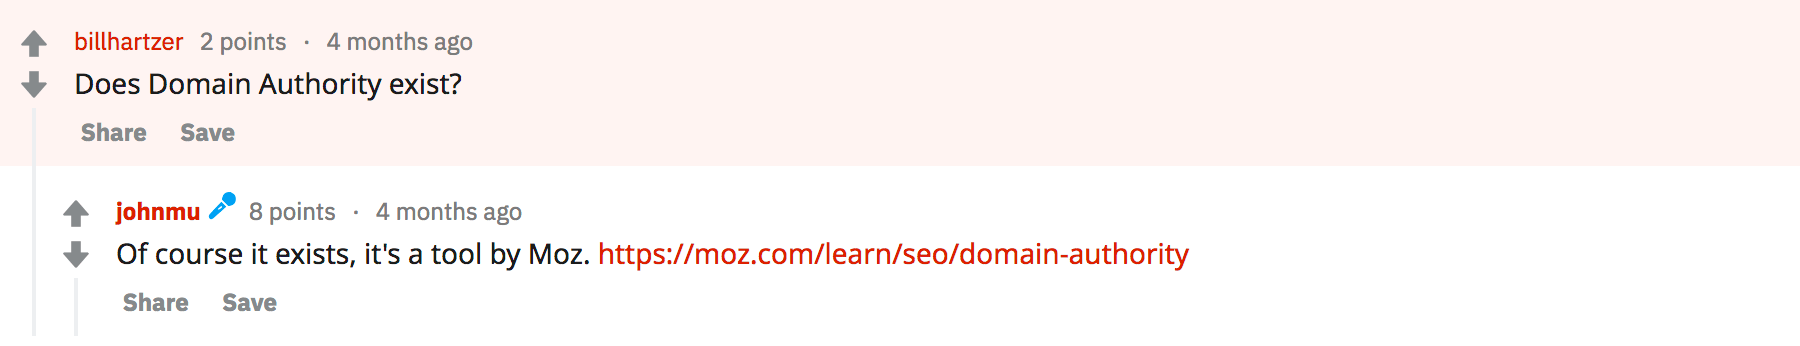 metryka domain authority nie istnieje